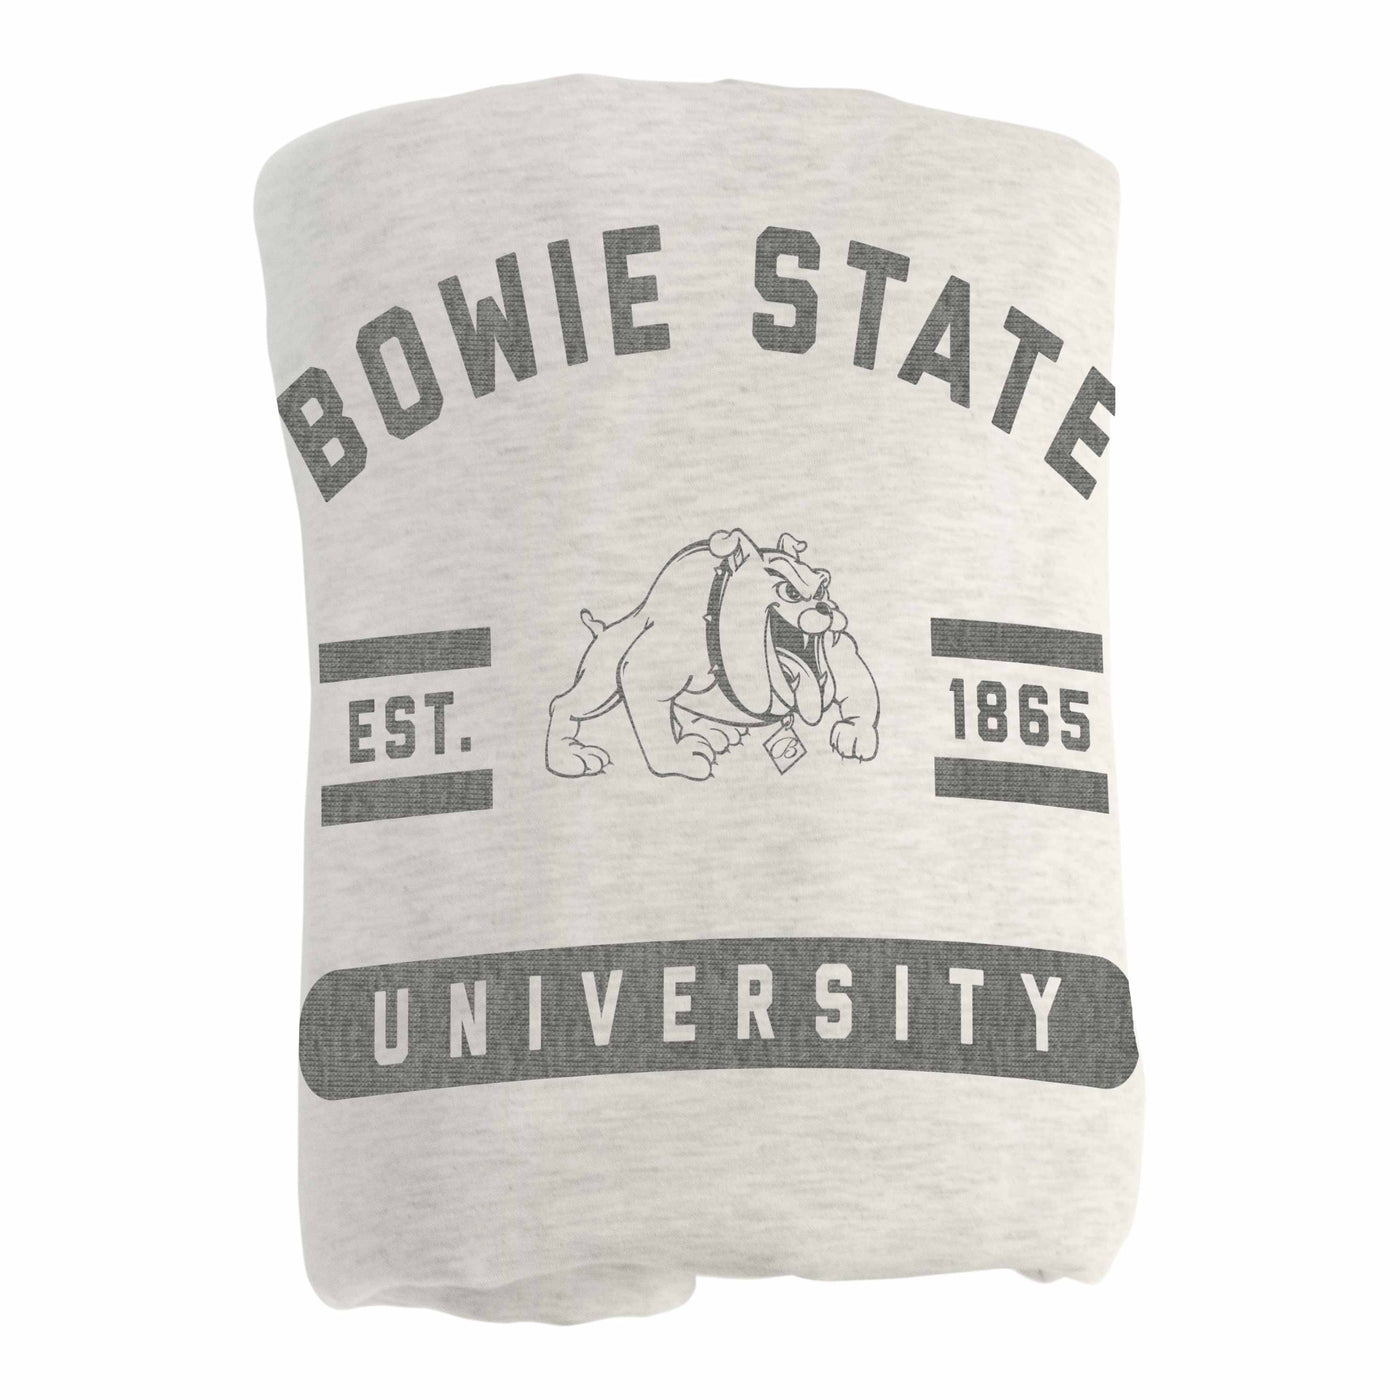 Bowie State Oatmeal Sweatshirt Blanket